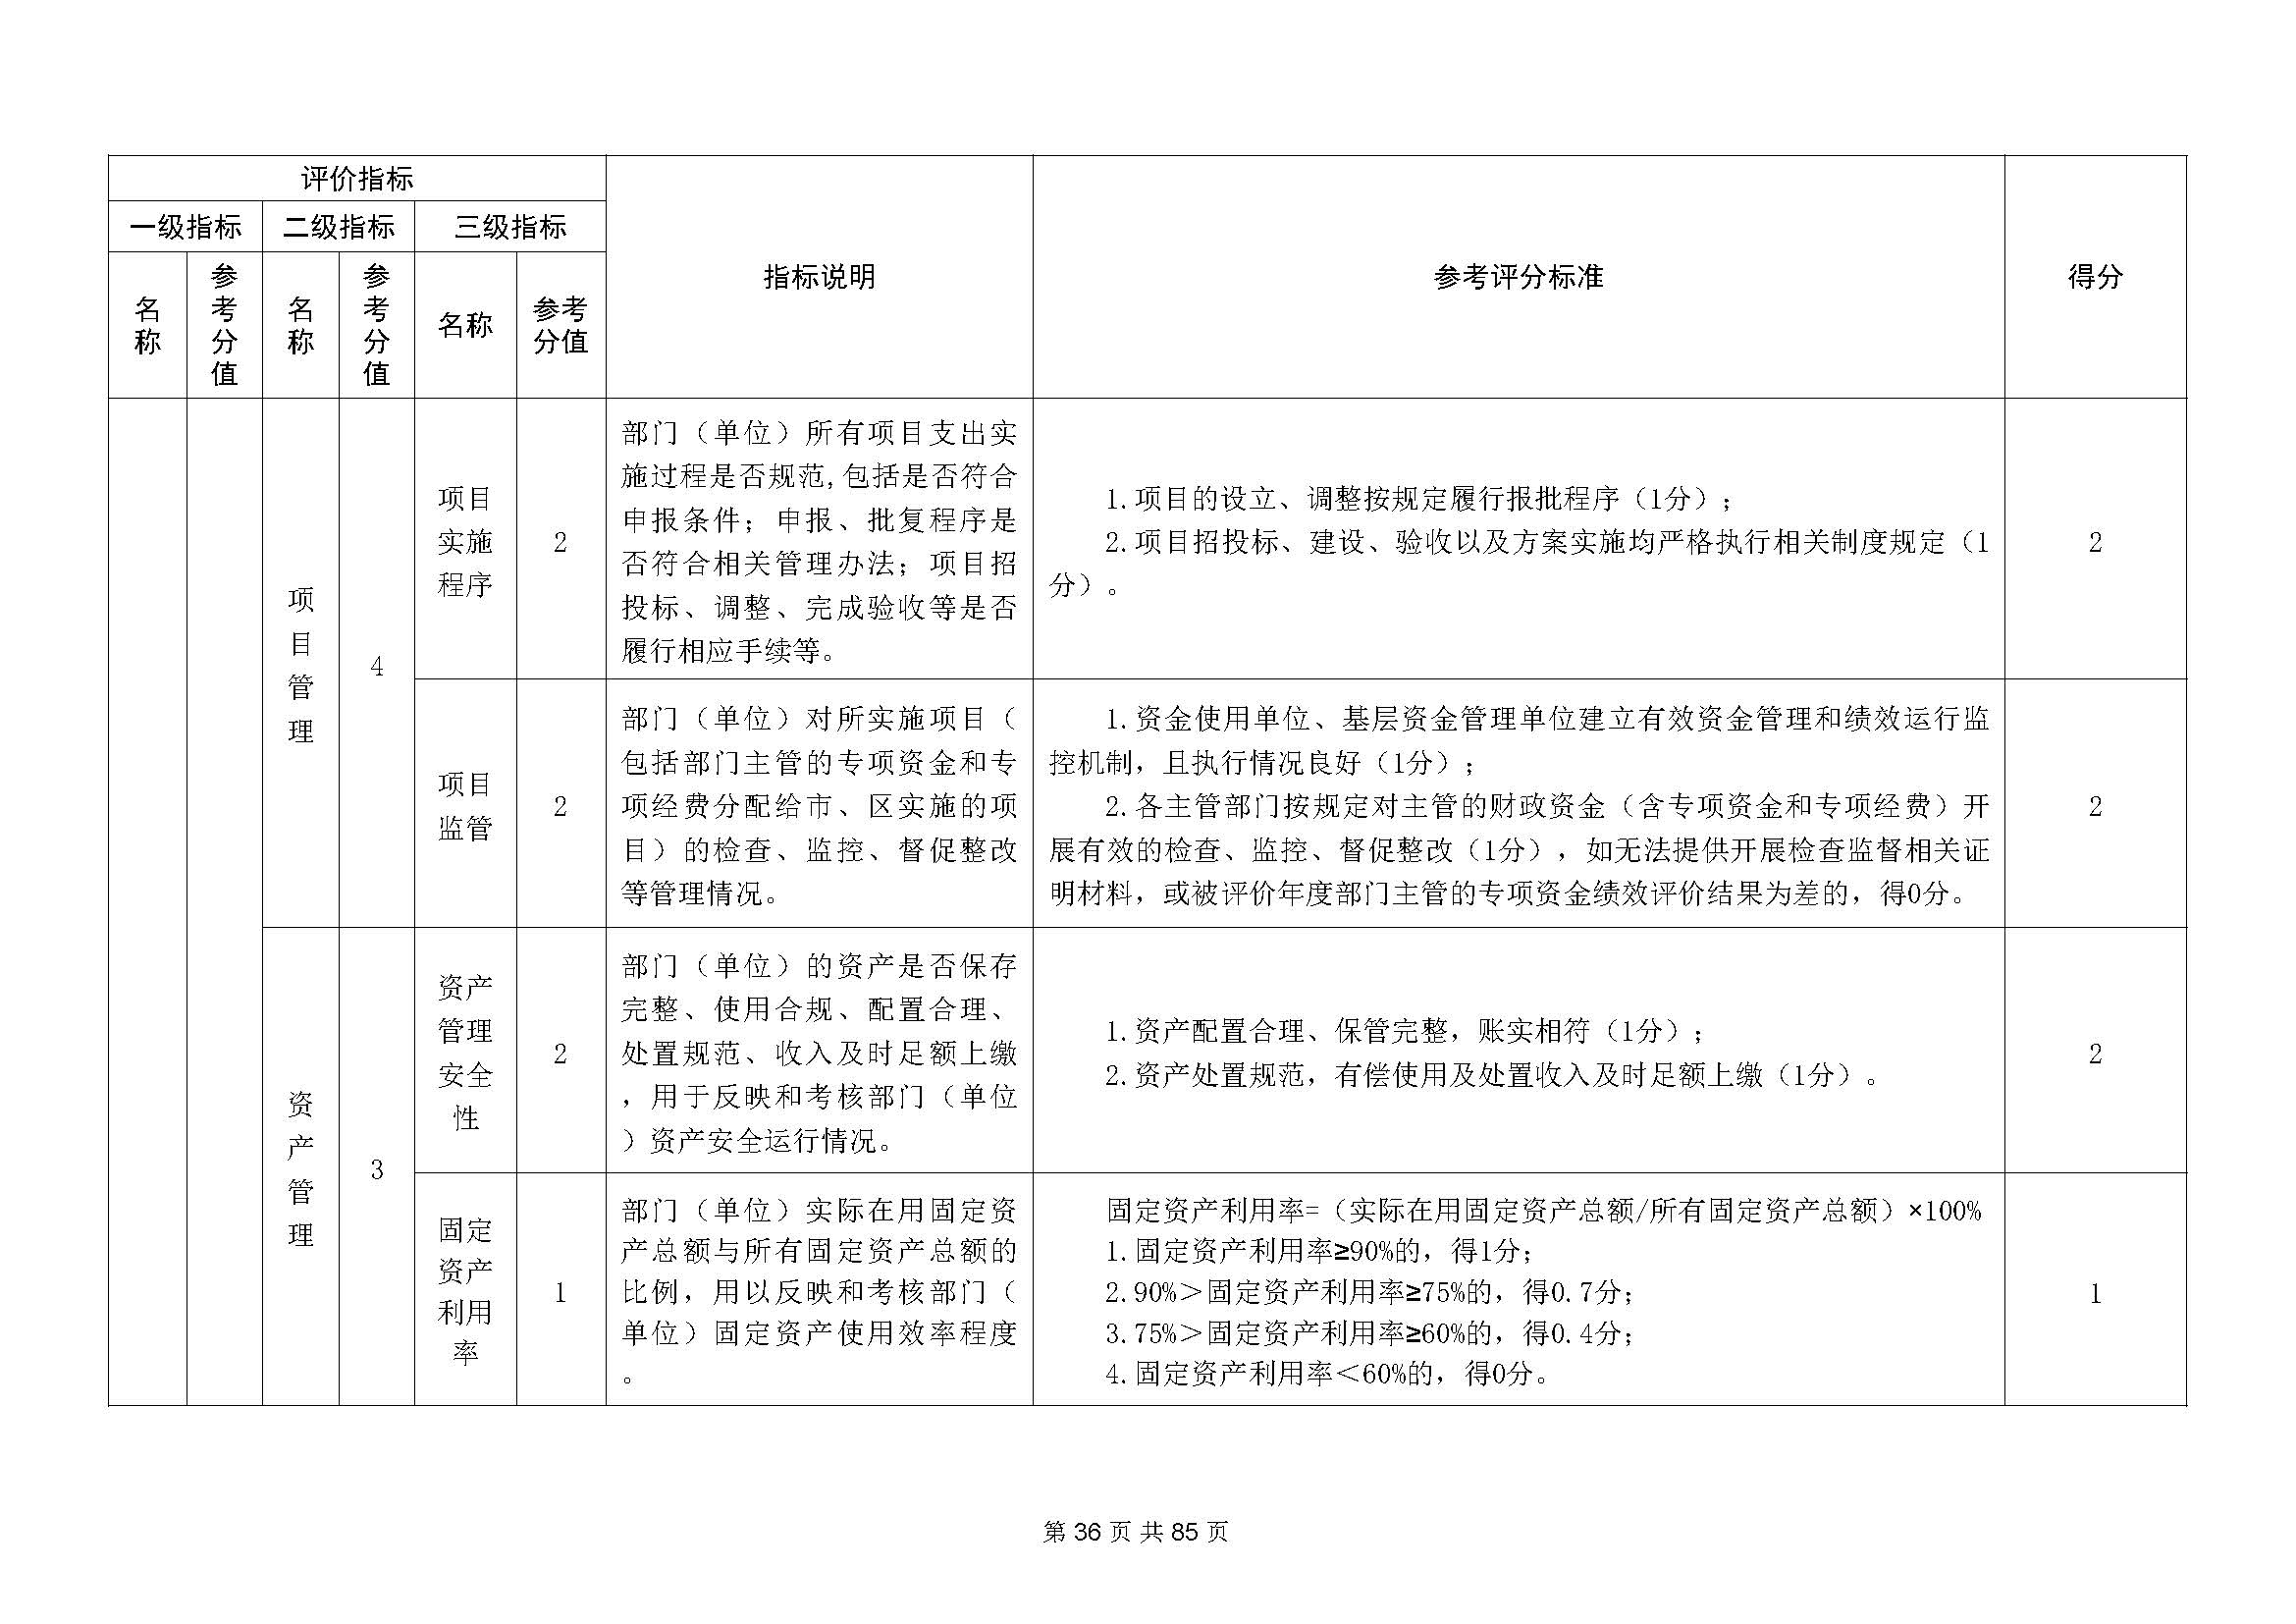 深圳市招生考试办公室2020年度部门决算_页面_37.jpg